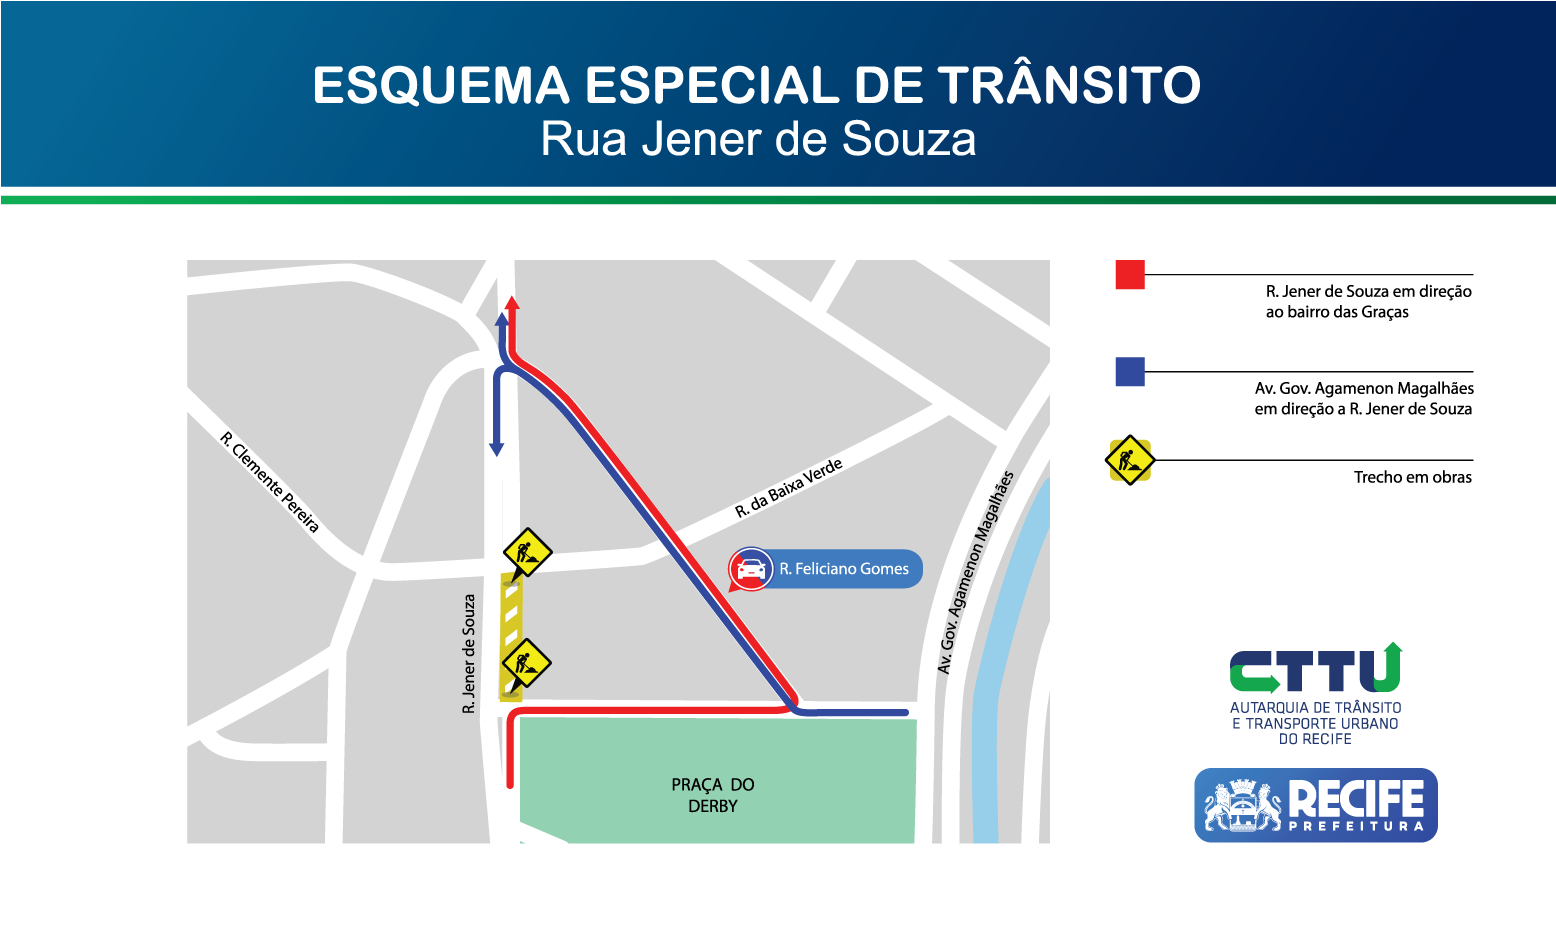 Confira informações de trânsito, serviço de ônibus, estacionamento e todos  os detalhes para o acesso à Arena MRV - FalaGalo